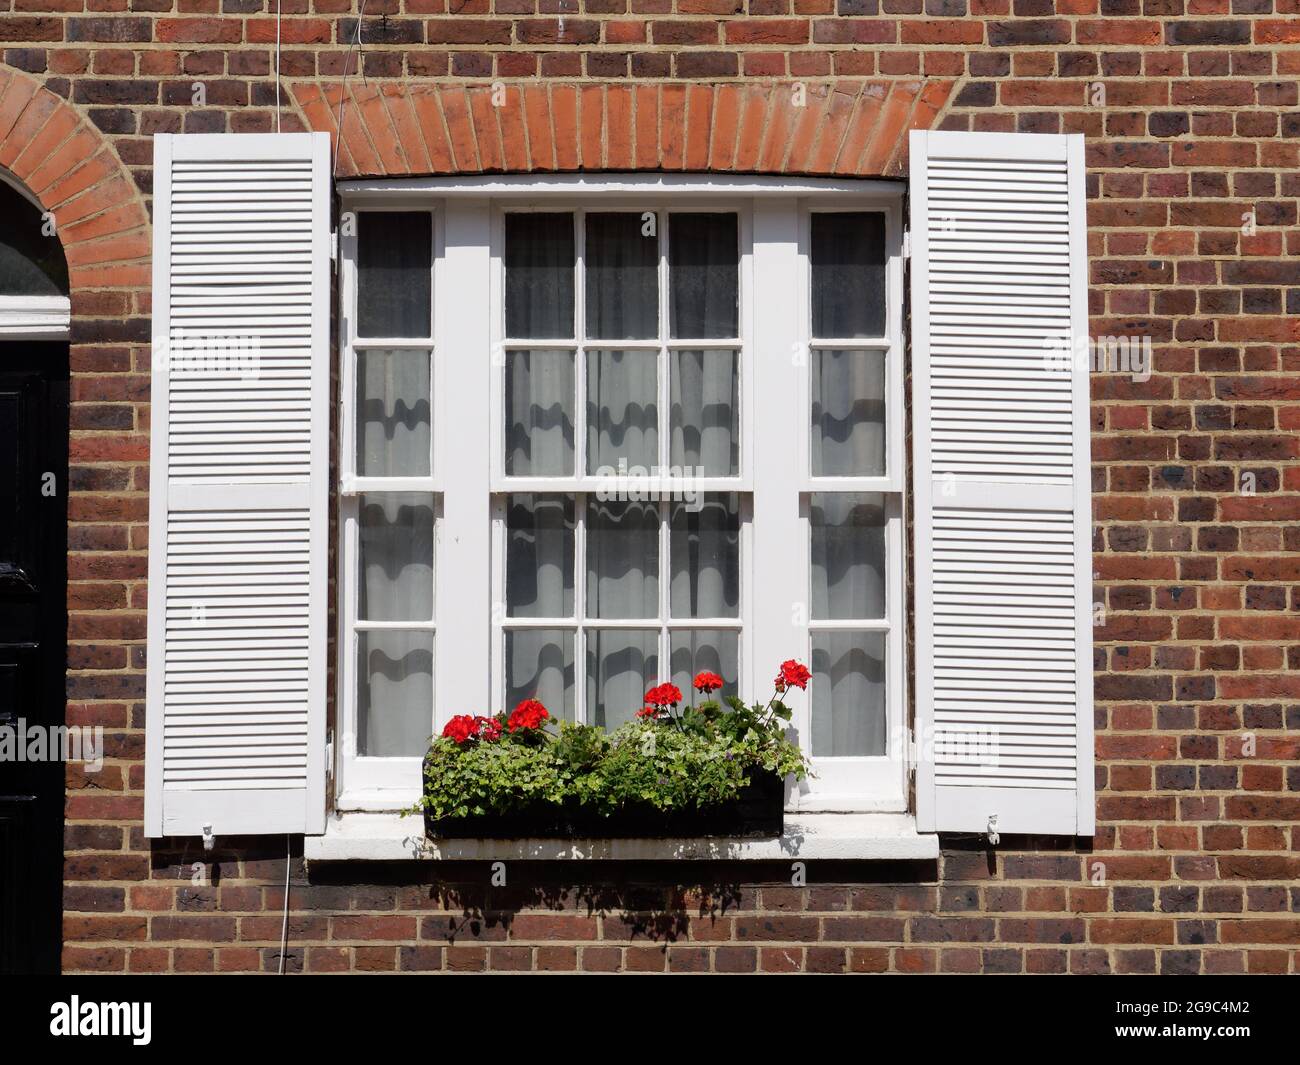 Londres, Grand Londres, Angleterre, juin 12 2021 : boîte à fenêtre pleine de plantes et de fleurs à l'extérieur d'une propriété résidentielle en brique. Banque D'Images